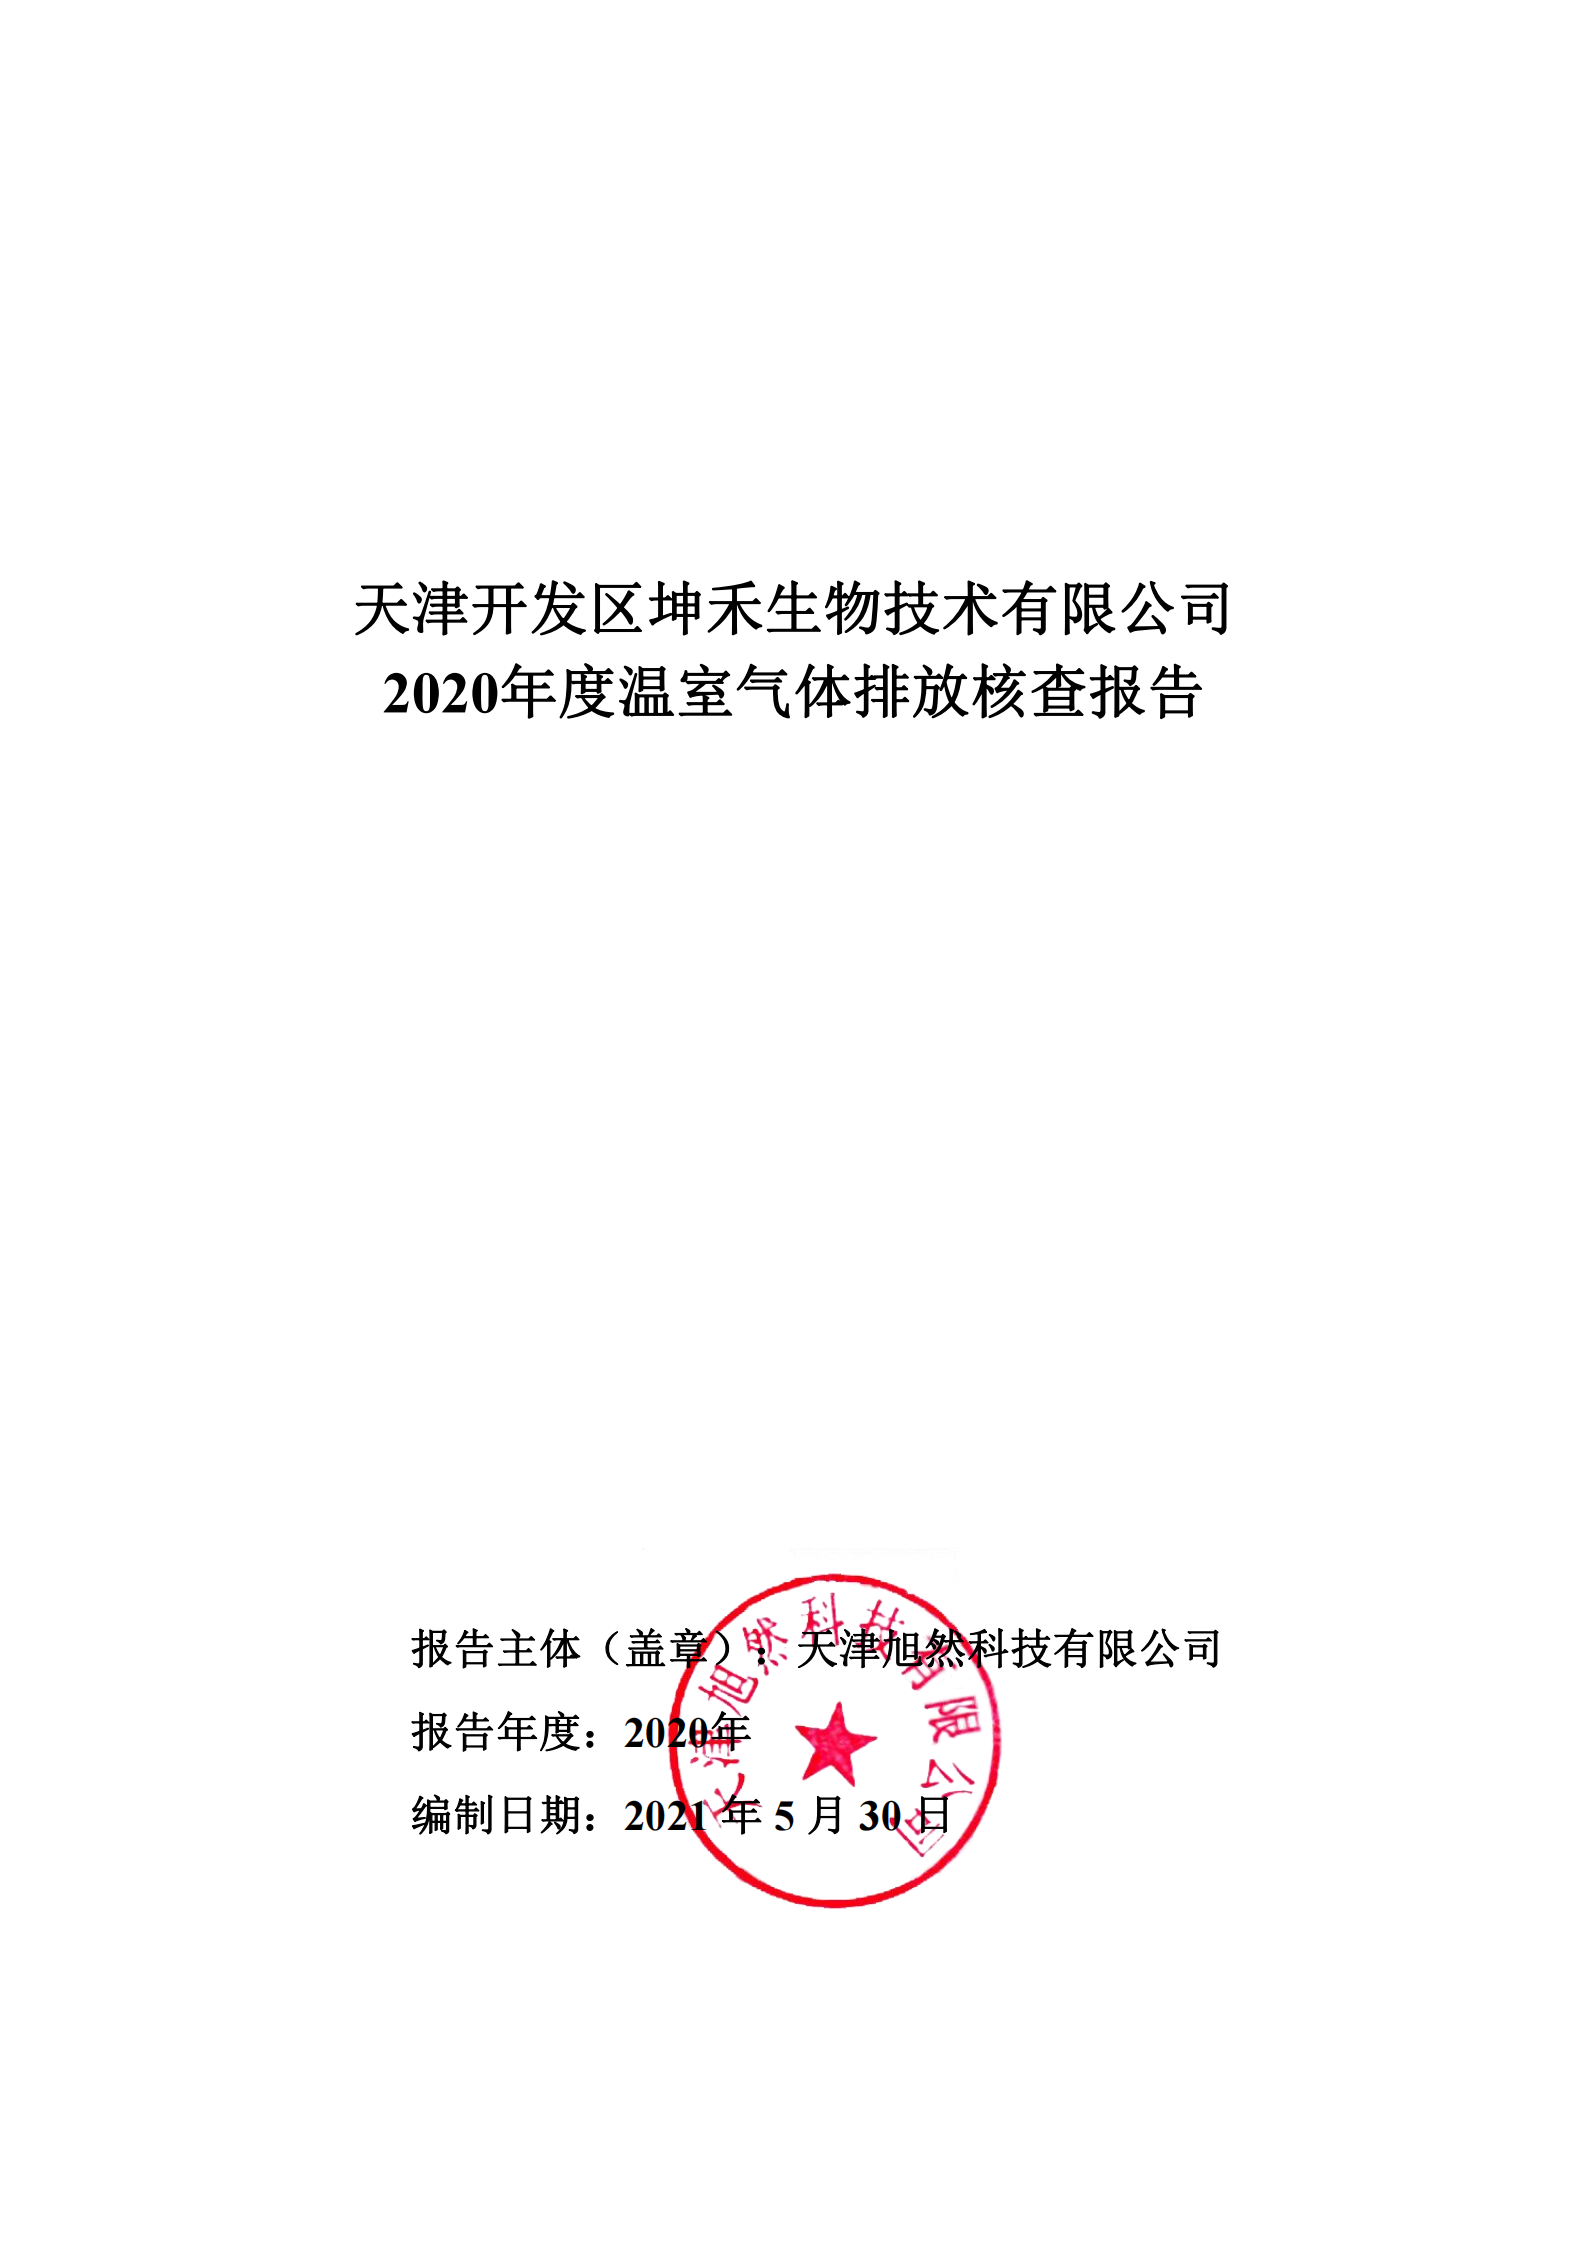 2020年温室气体核查报告-坤禾_00.png